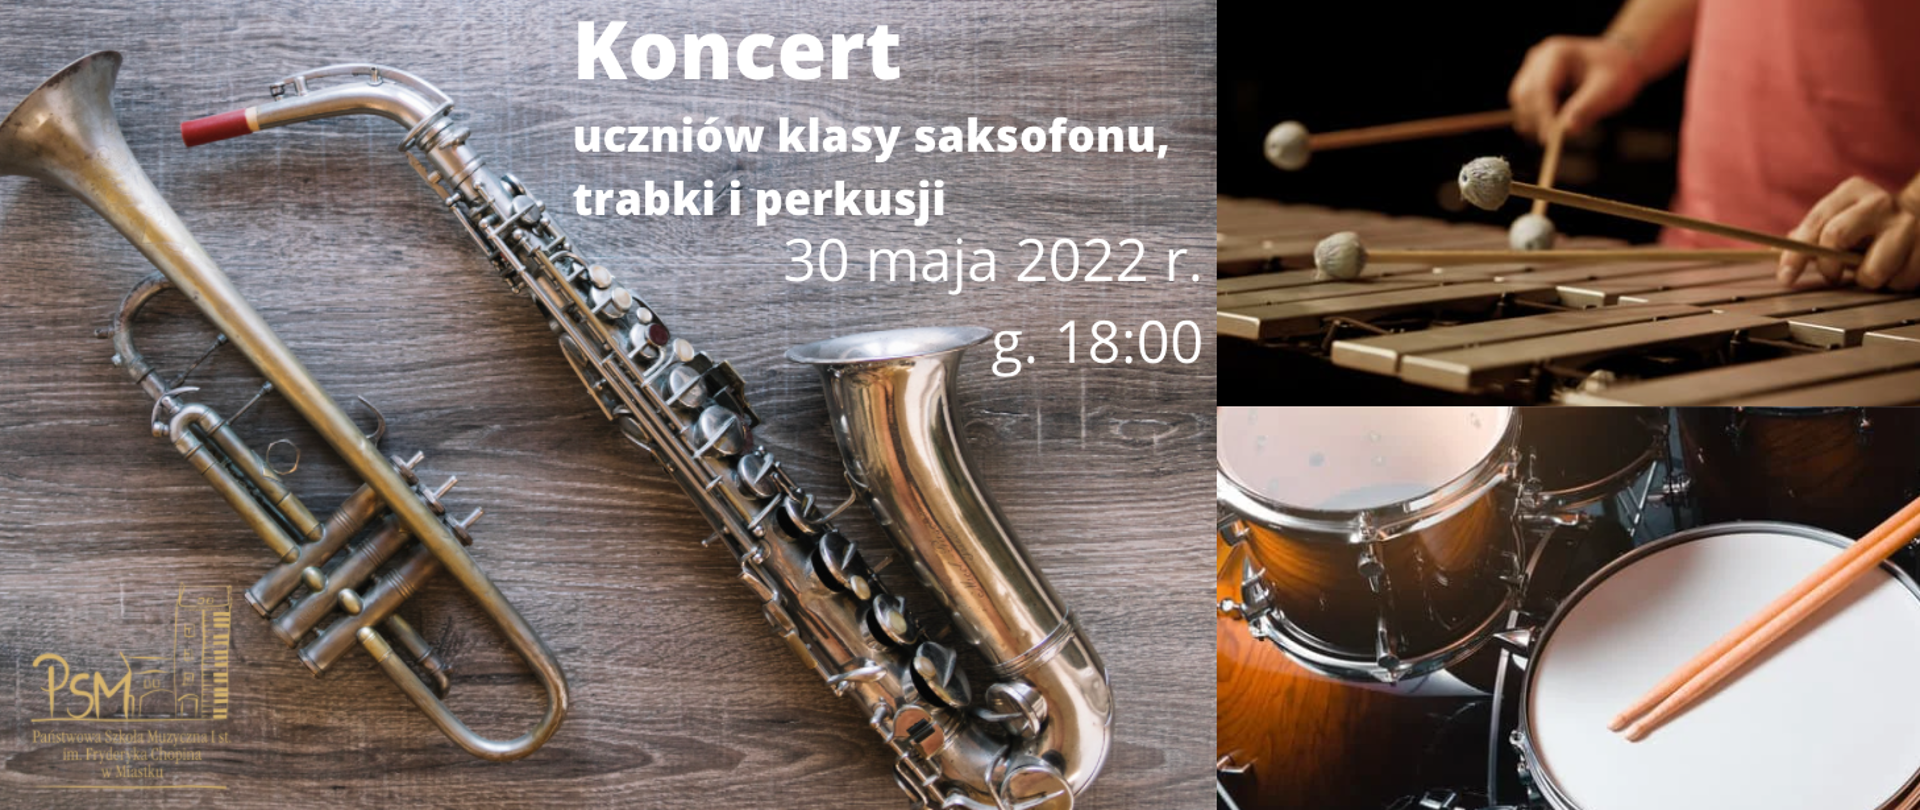 zdjęcia instrumentów muzycznych, trąbka, saksofon, wibrafon, zestaw perkusyjny, w środkowej części teks informujący o koncercie klasy trąbki, saksofonu i perkusji w dniu 30 maja 2022 r. 